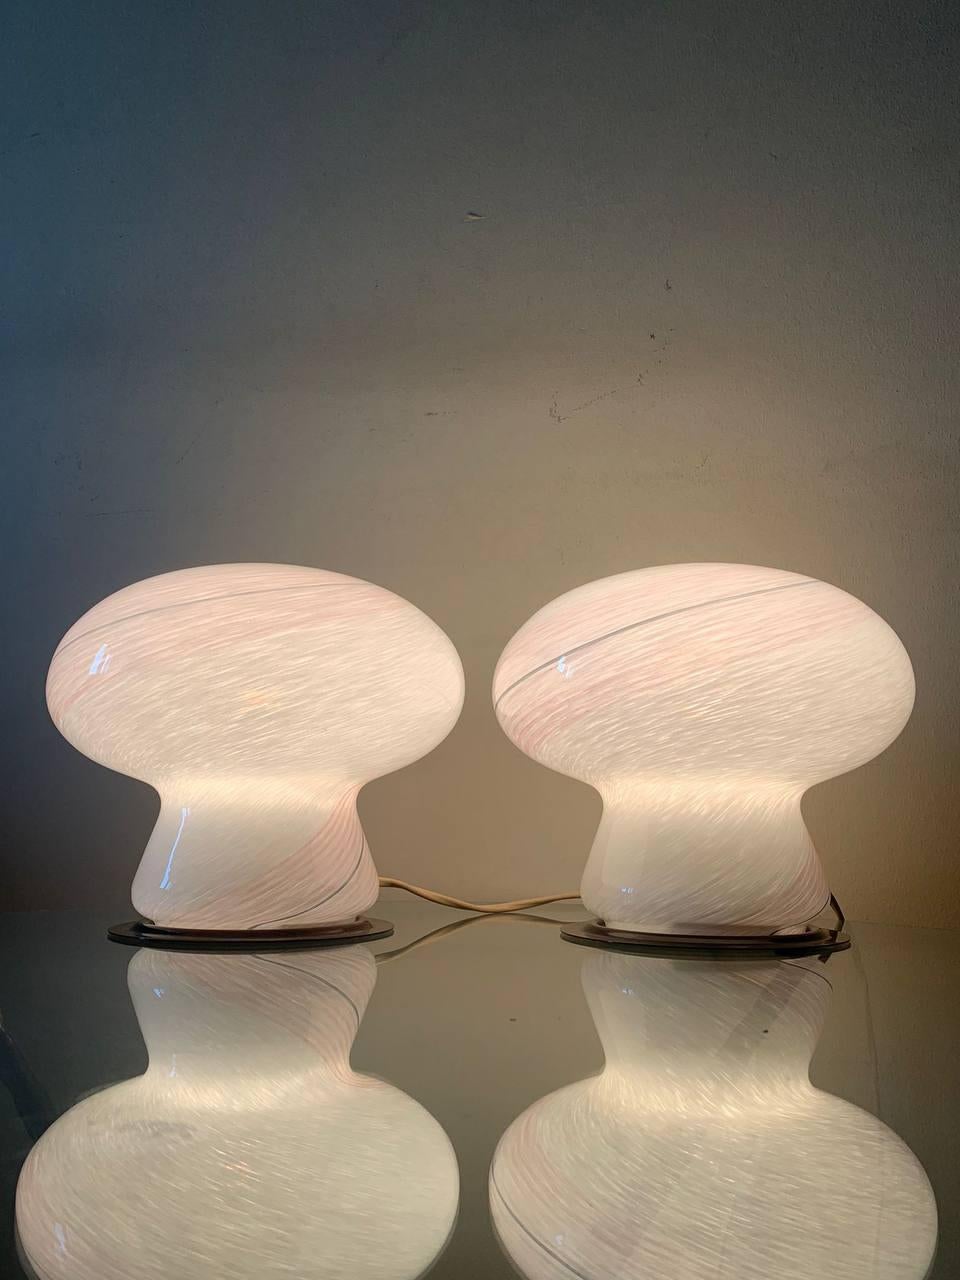 Lampes en forme de champignon en verre de Murano rose avec des décorations blanches et grises, disponibles par paire.
En bon état de fonctionnement, conformément aux photos et à la vidéo 